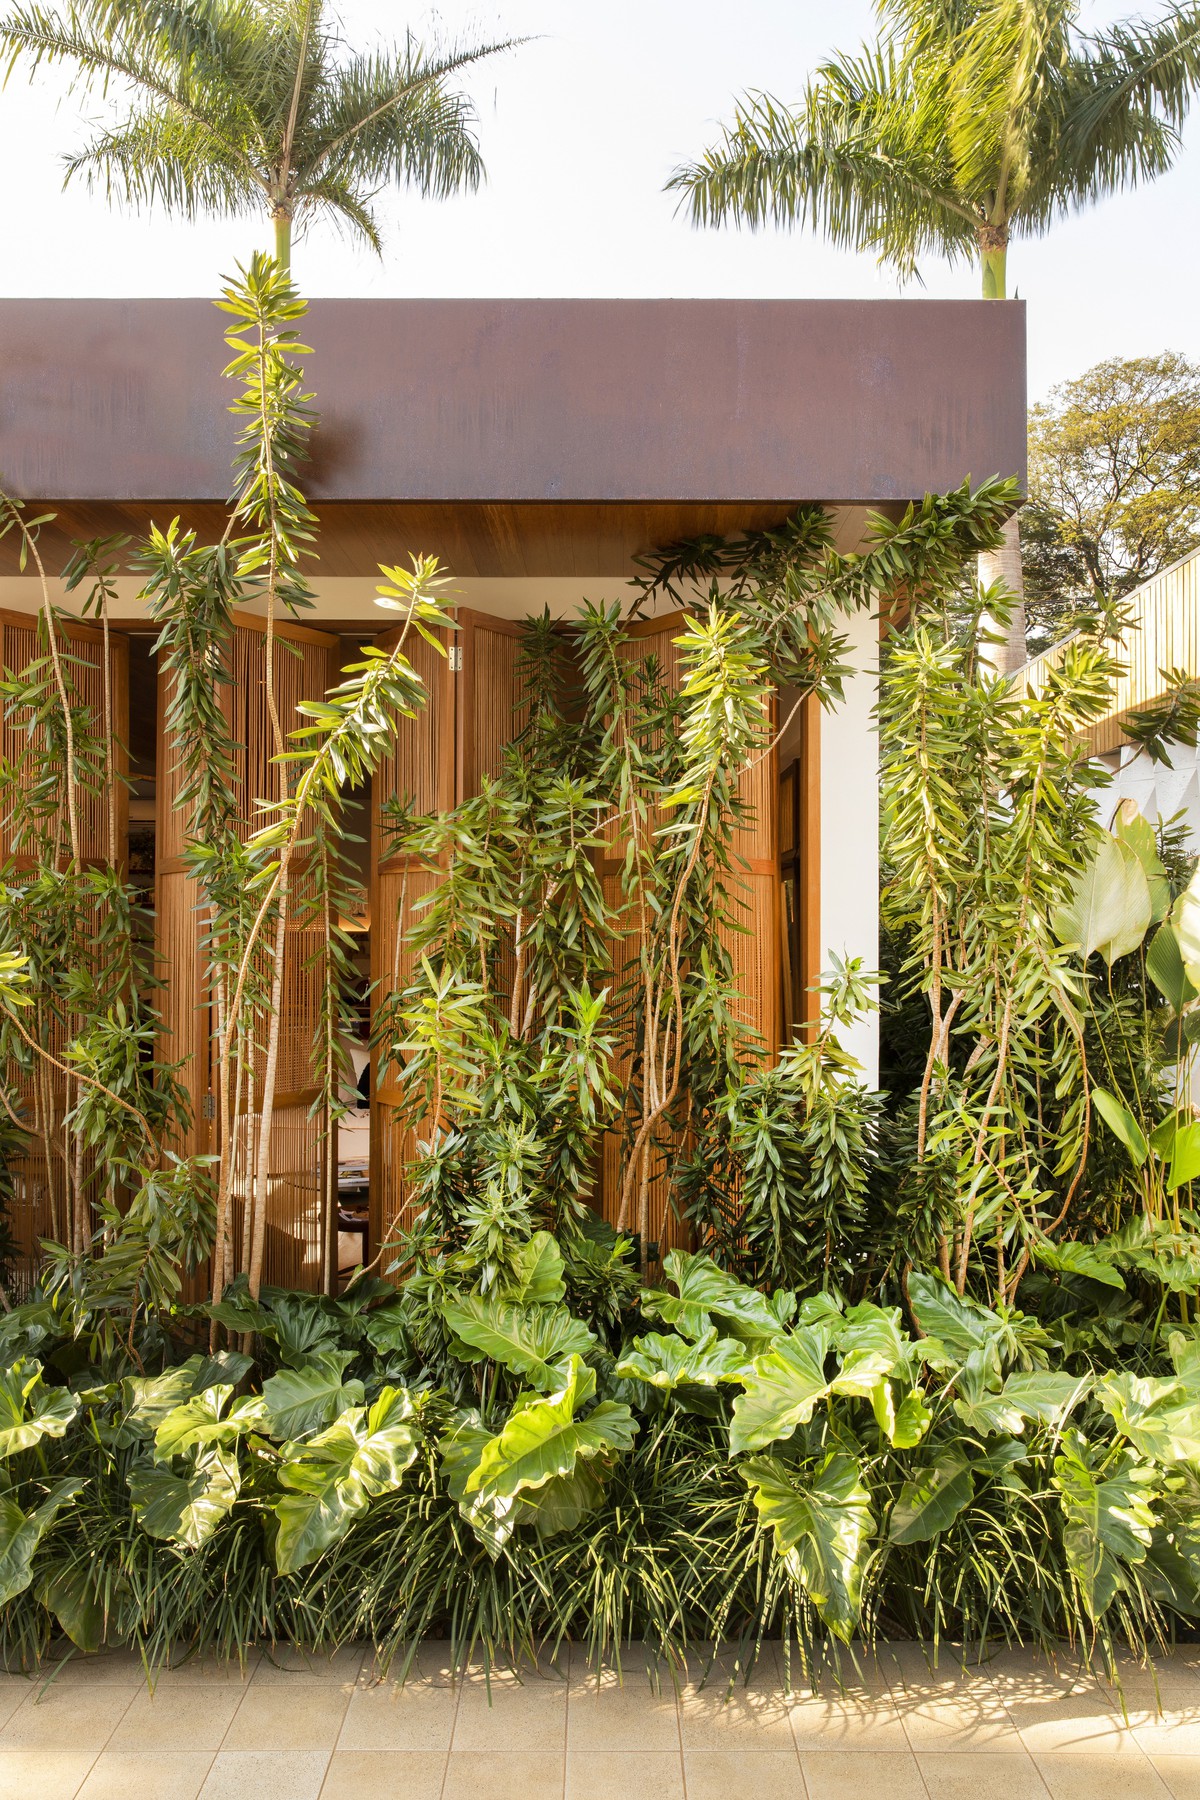 Công trình nhà ở nhìn từ bên ngoài tuyệt đẹp, tựa như Mẹ thiên nhiên xanh mát đang ôm ấp lấy ngôi nhà nhỏ bằng gỗ.